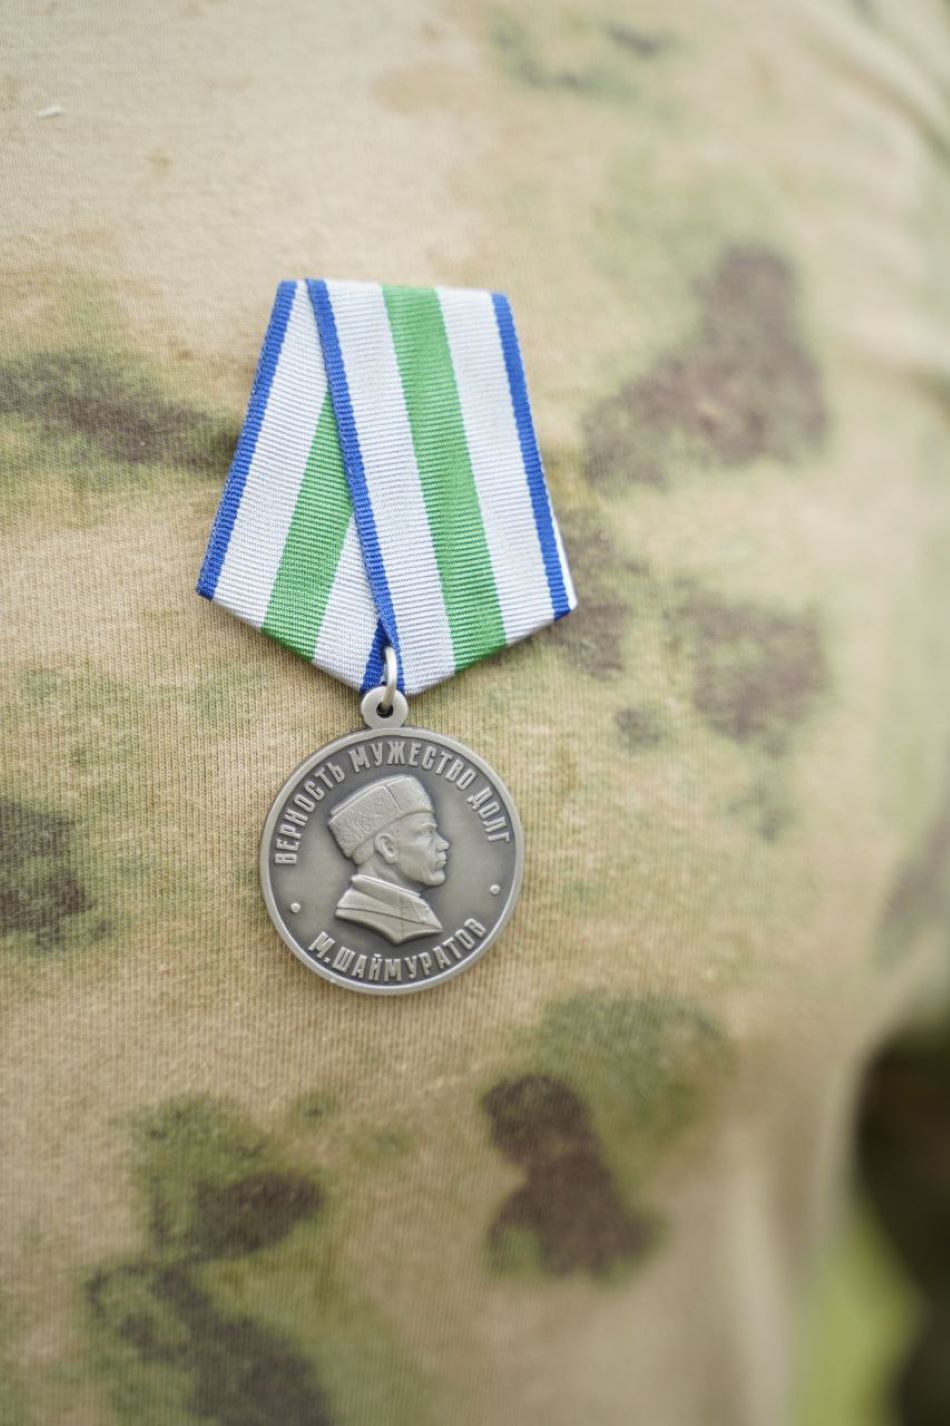 Наш выпускник награжден медалью генерала Шаймуратова: Поздравляем!